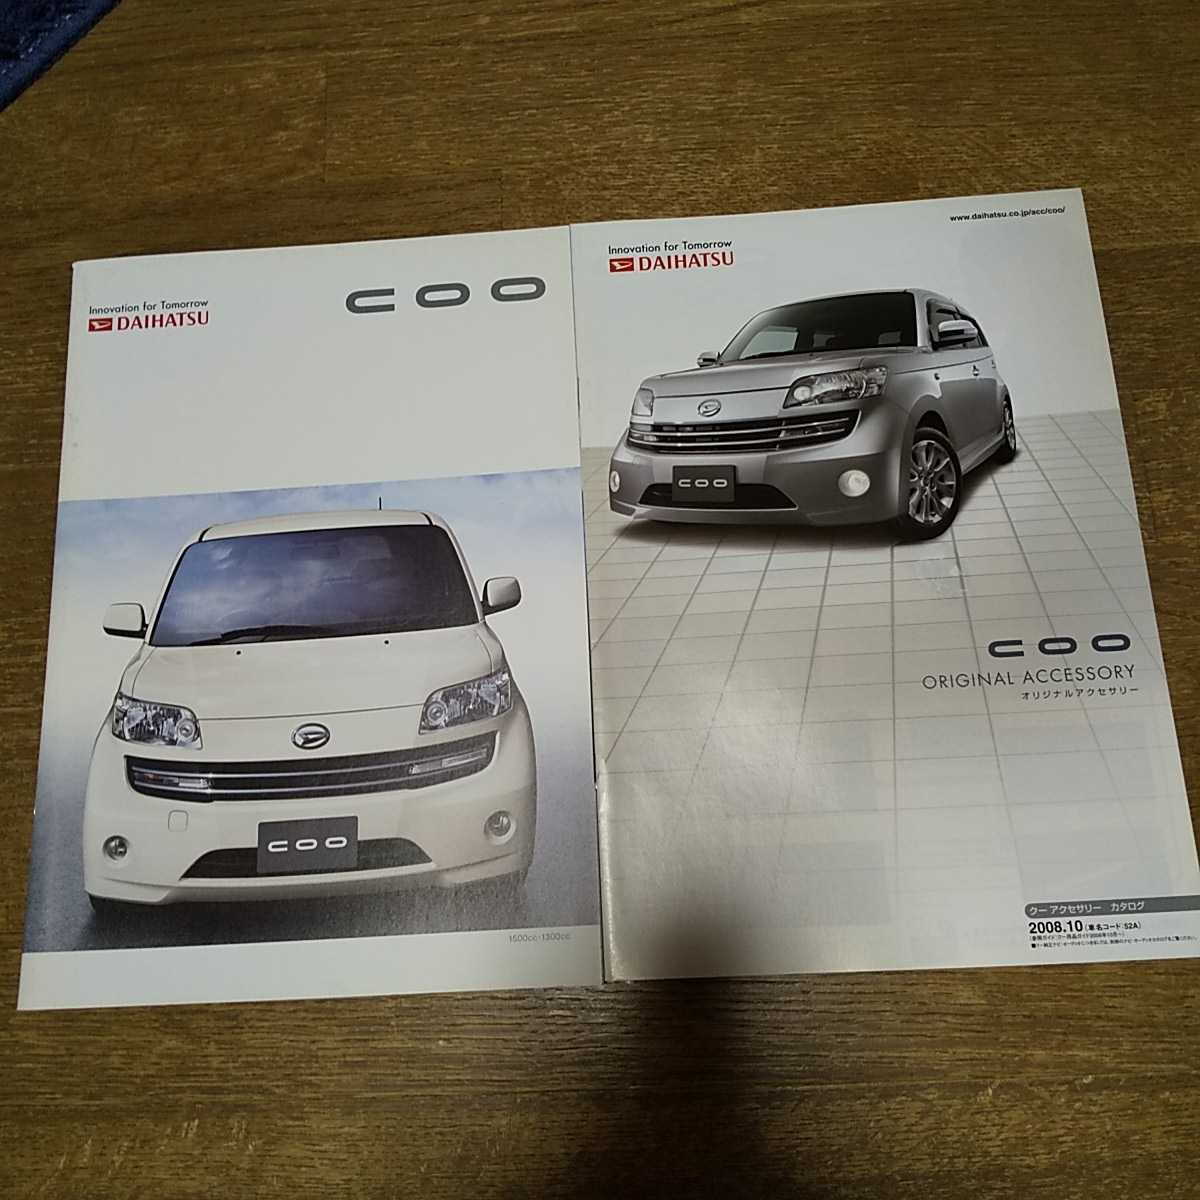 Daihatsu COO 2008.10 Catalogue